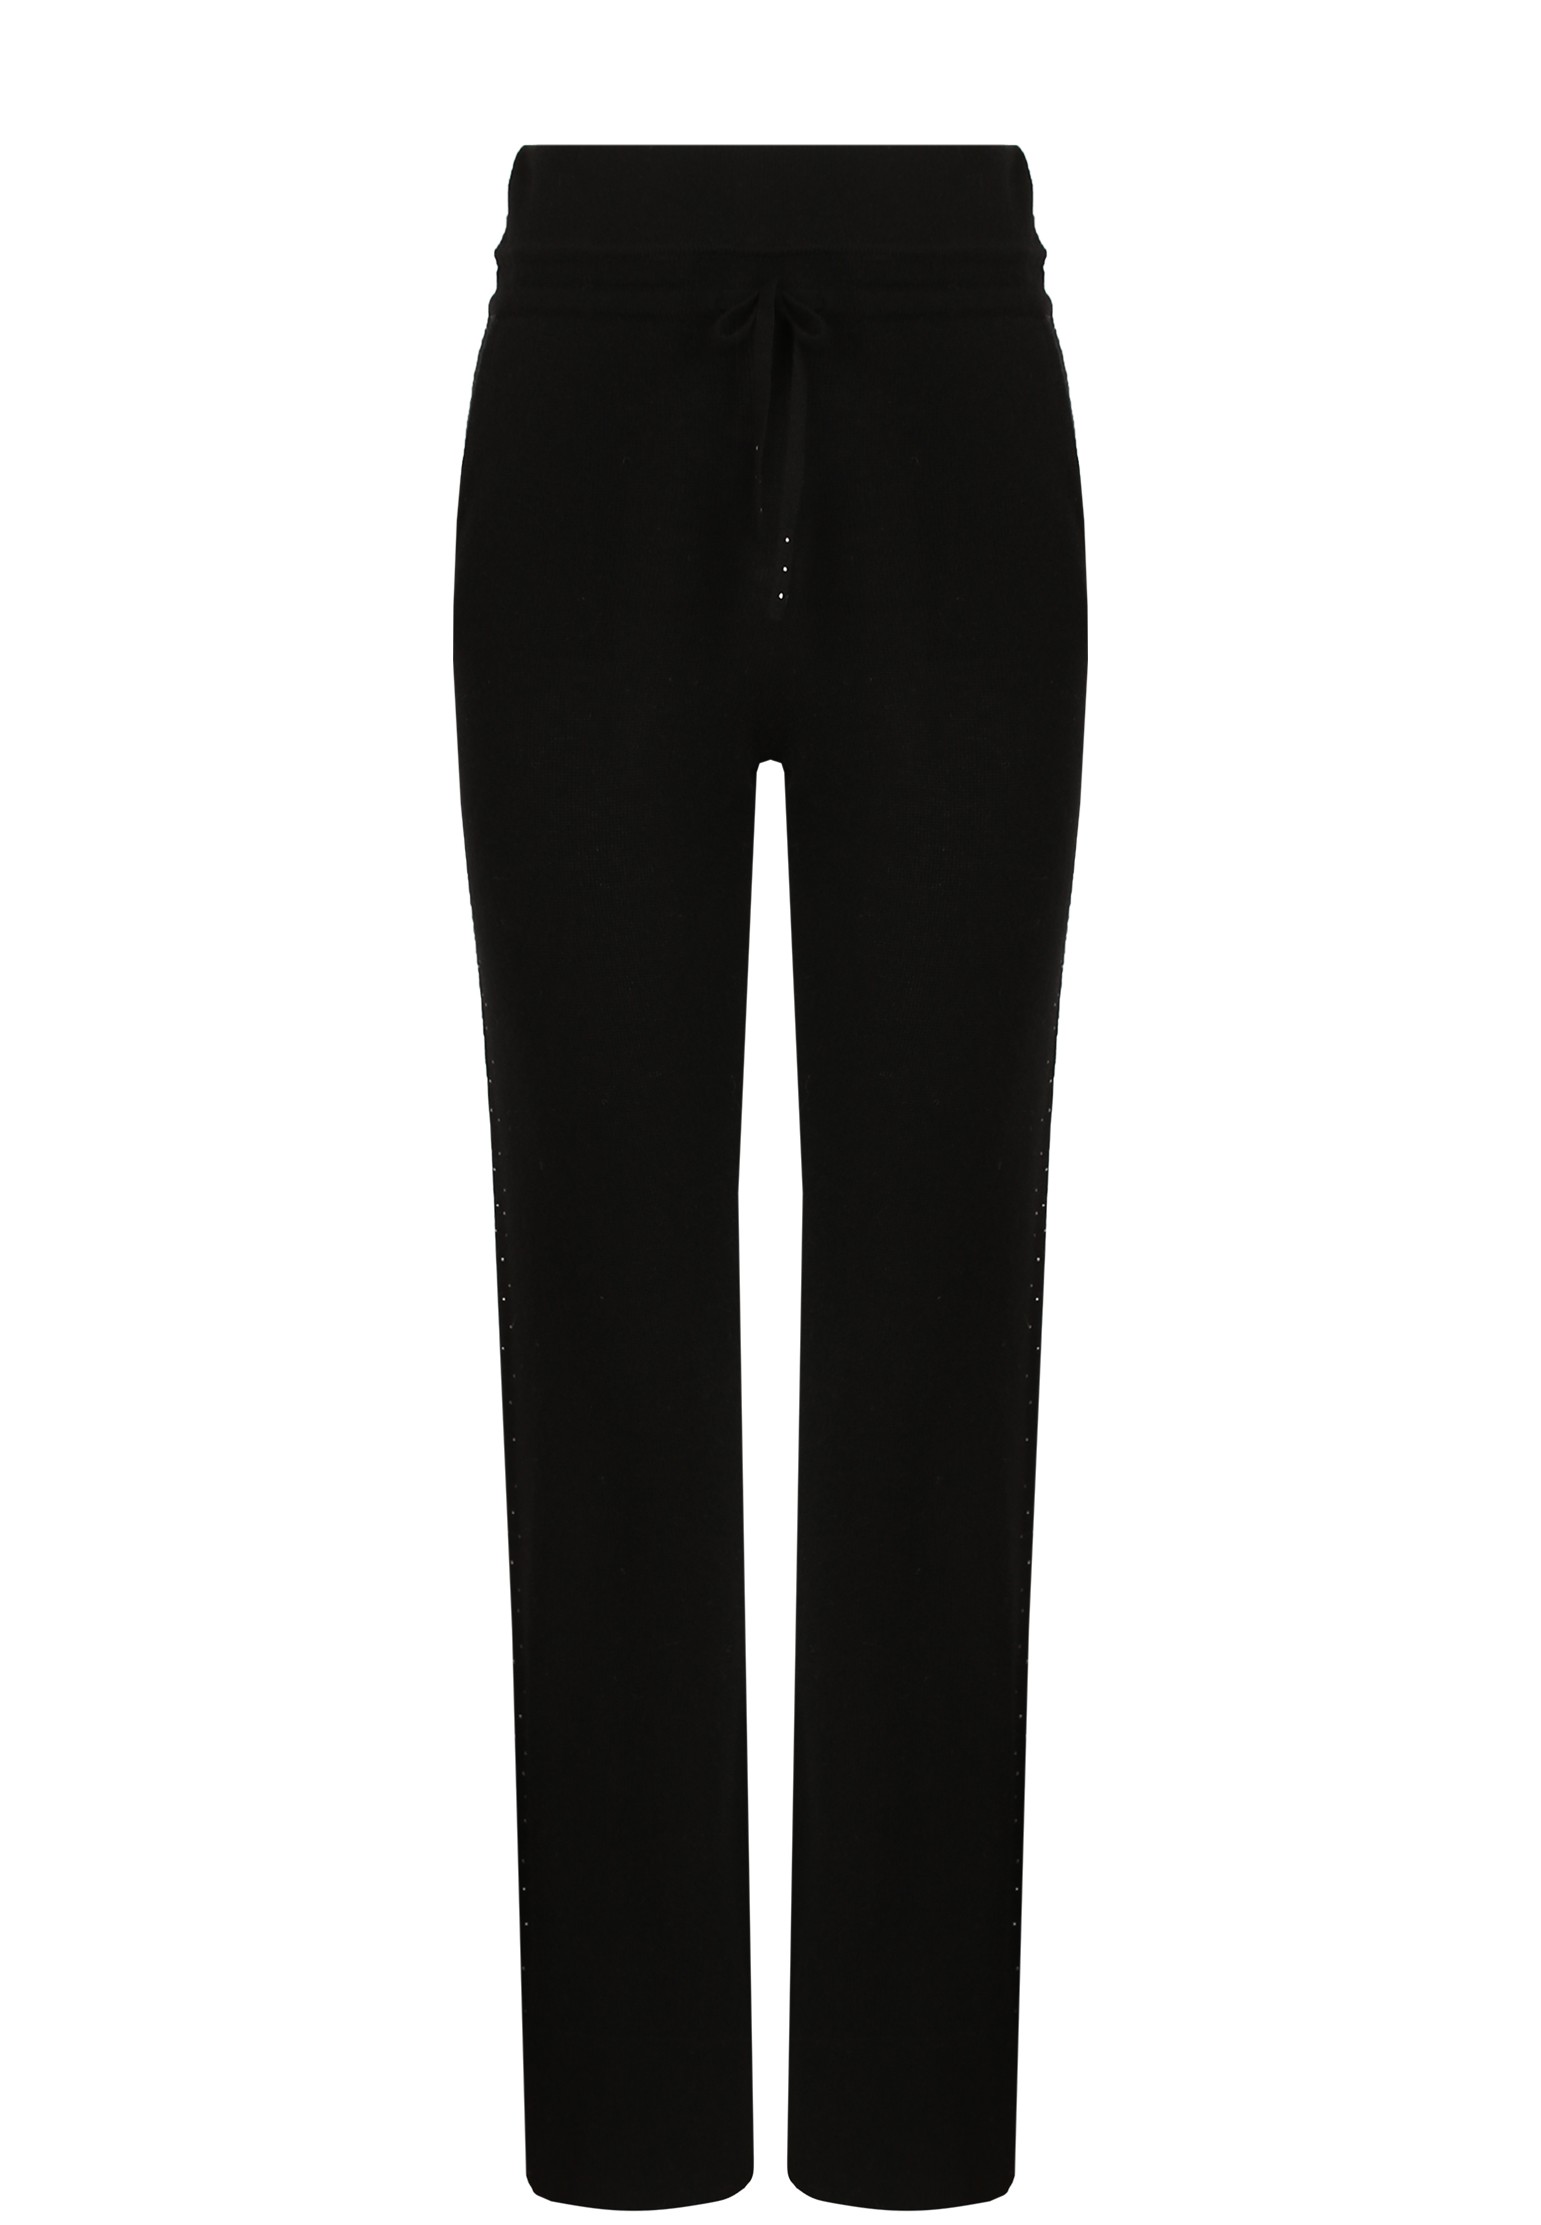 Спортивные брюки женские MAX & MOI 134917 черные XL